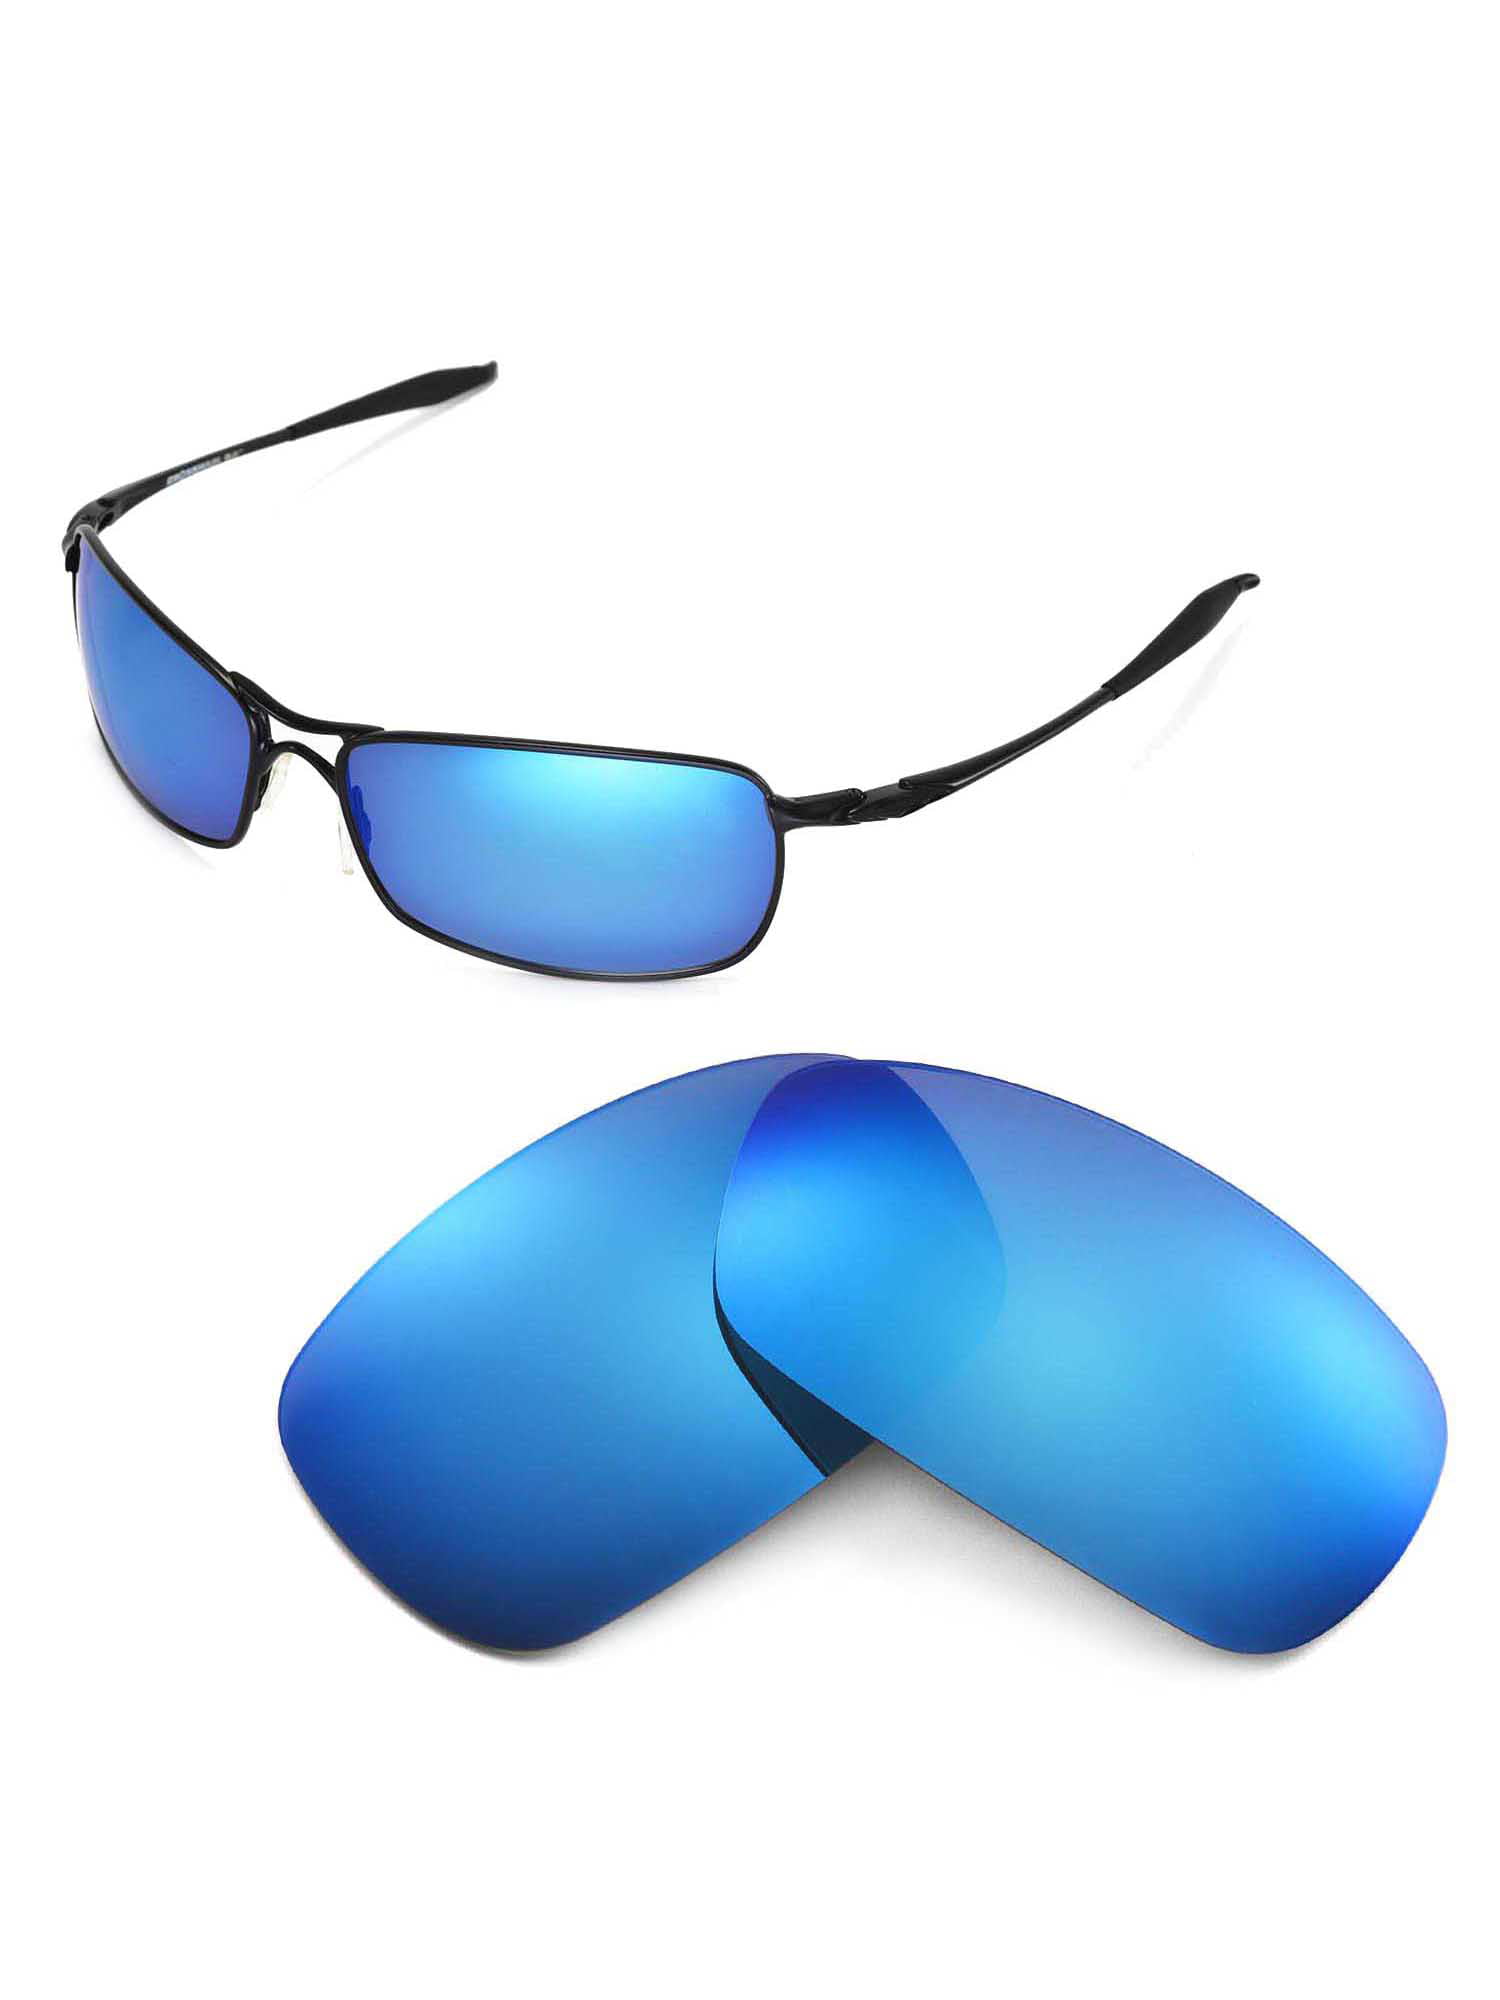 Очки айс. Oakley Crosshair 2.0. Очки oakley Crosshair. Oakley Crosshair 2.0 линзы. Поляризационные очки голубые.